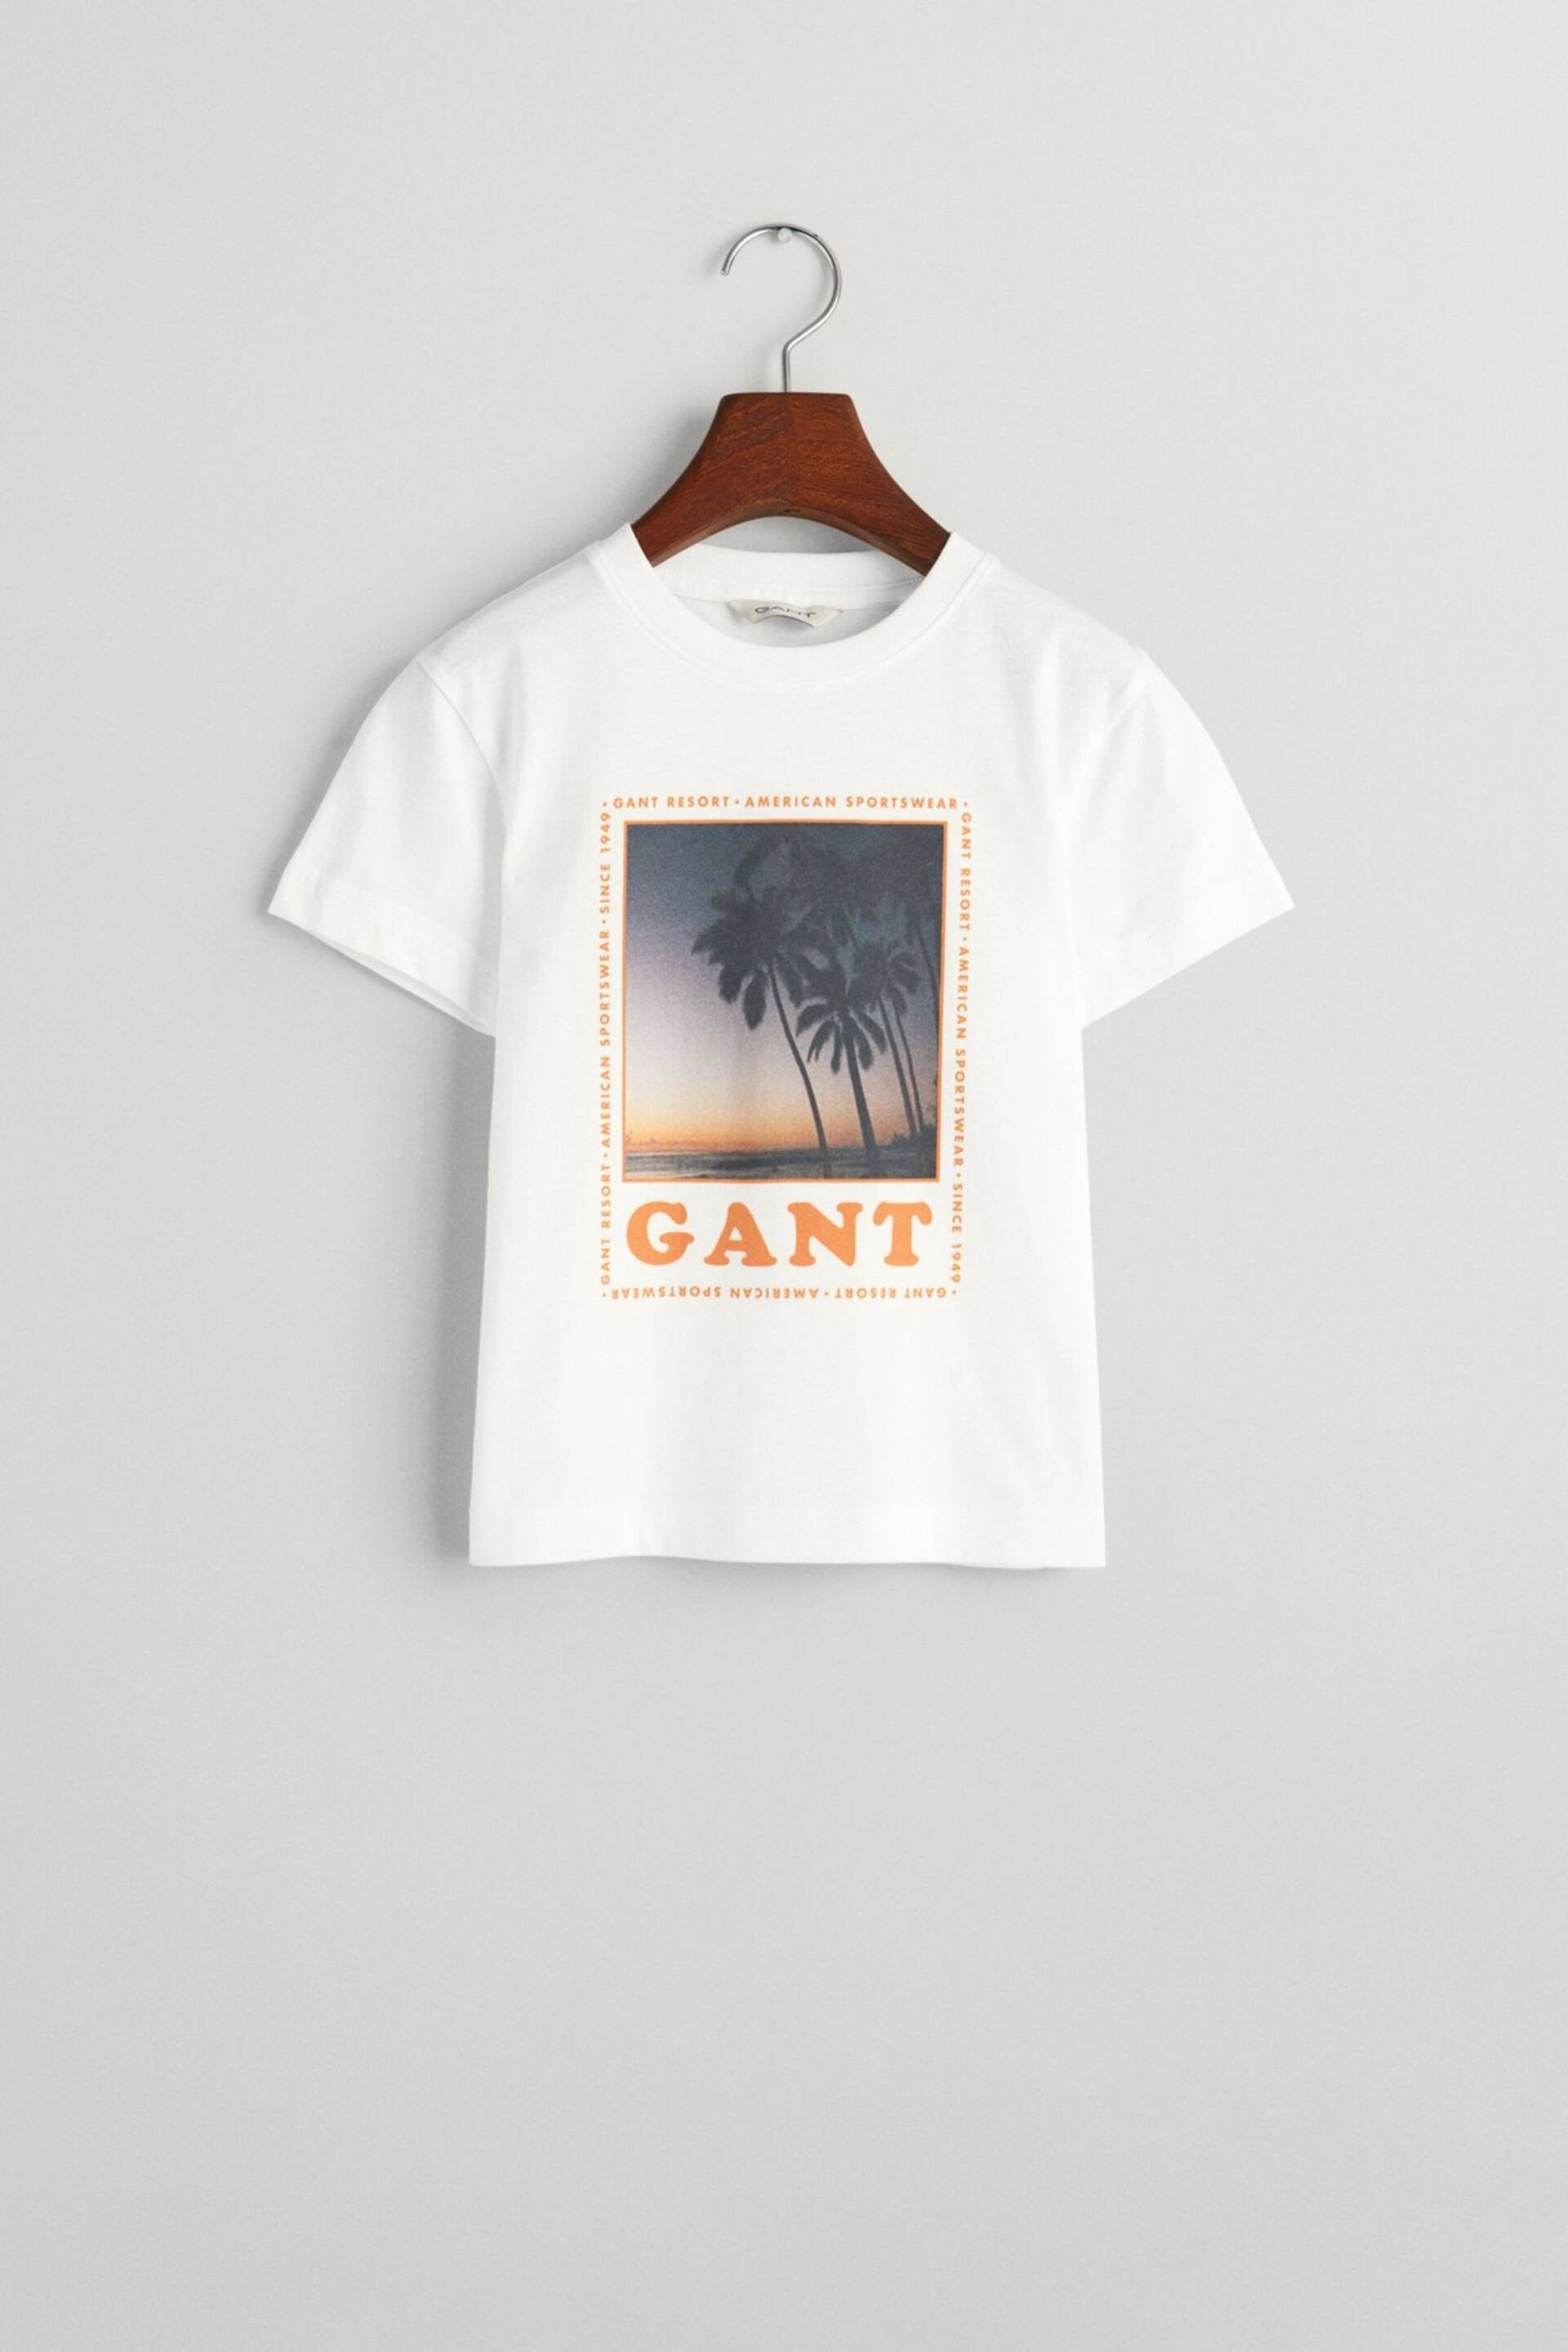 GANT Boys Resort White T-Shirt - Image 4 of 4